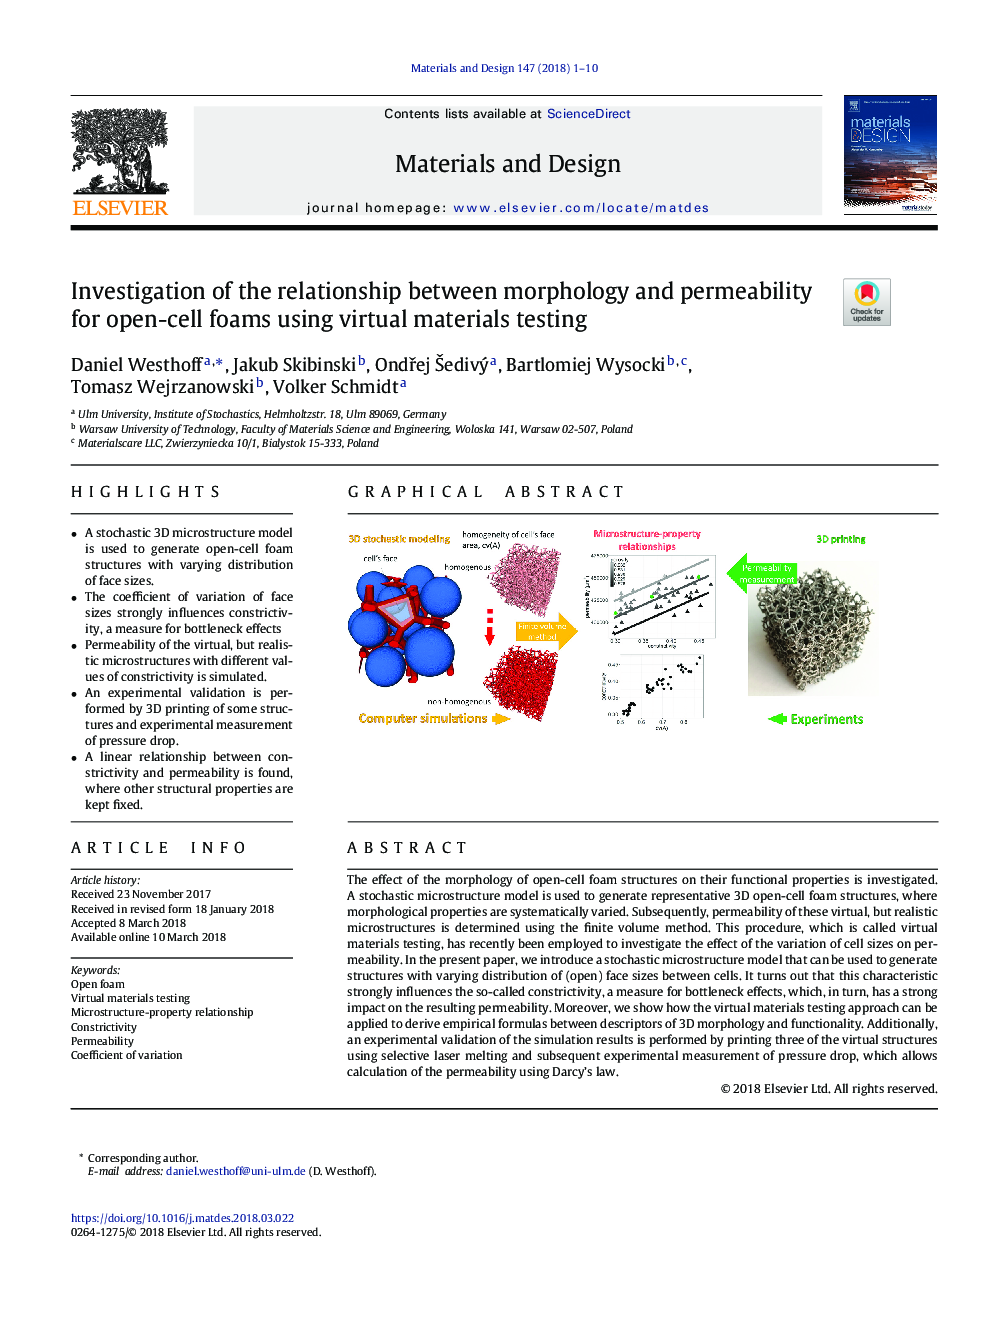 بررسی رابطه بین مورفولوژی و نفوذ پذیری فوم های باز سلولی با استفاده از آزمایش مواد مجازی 